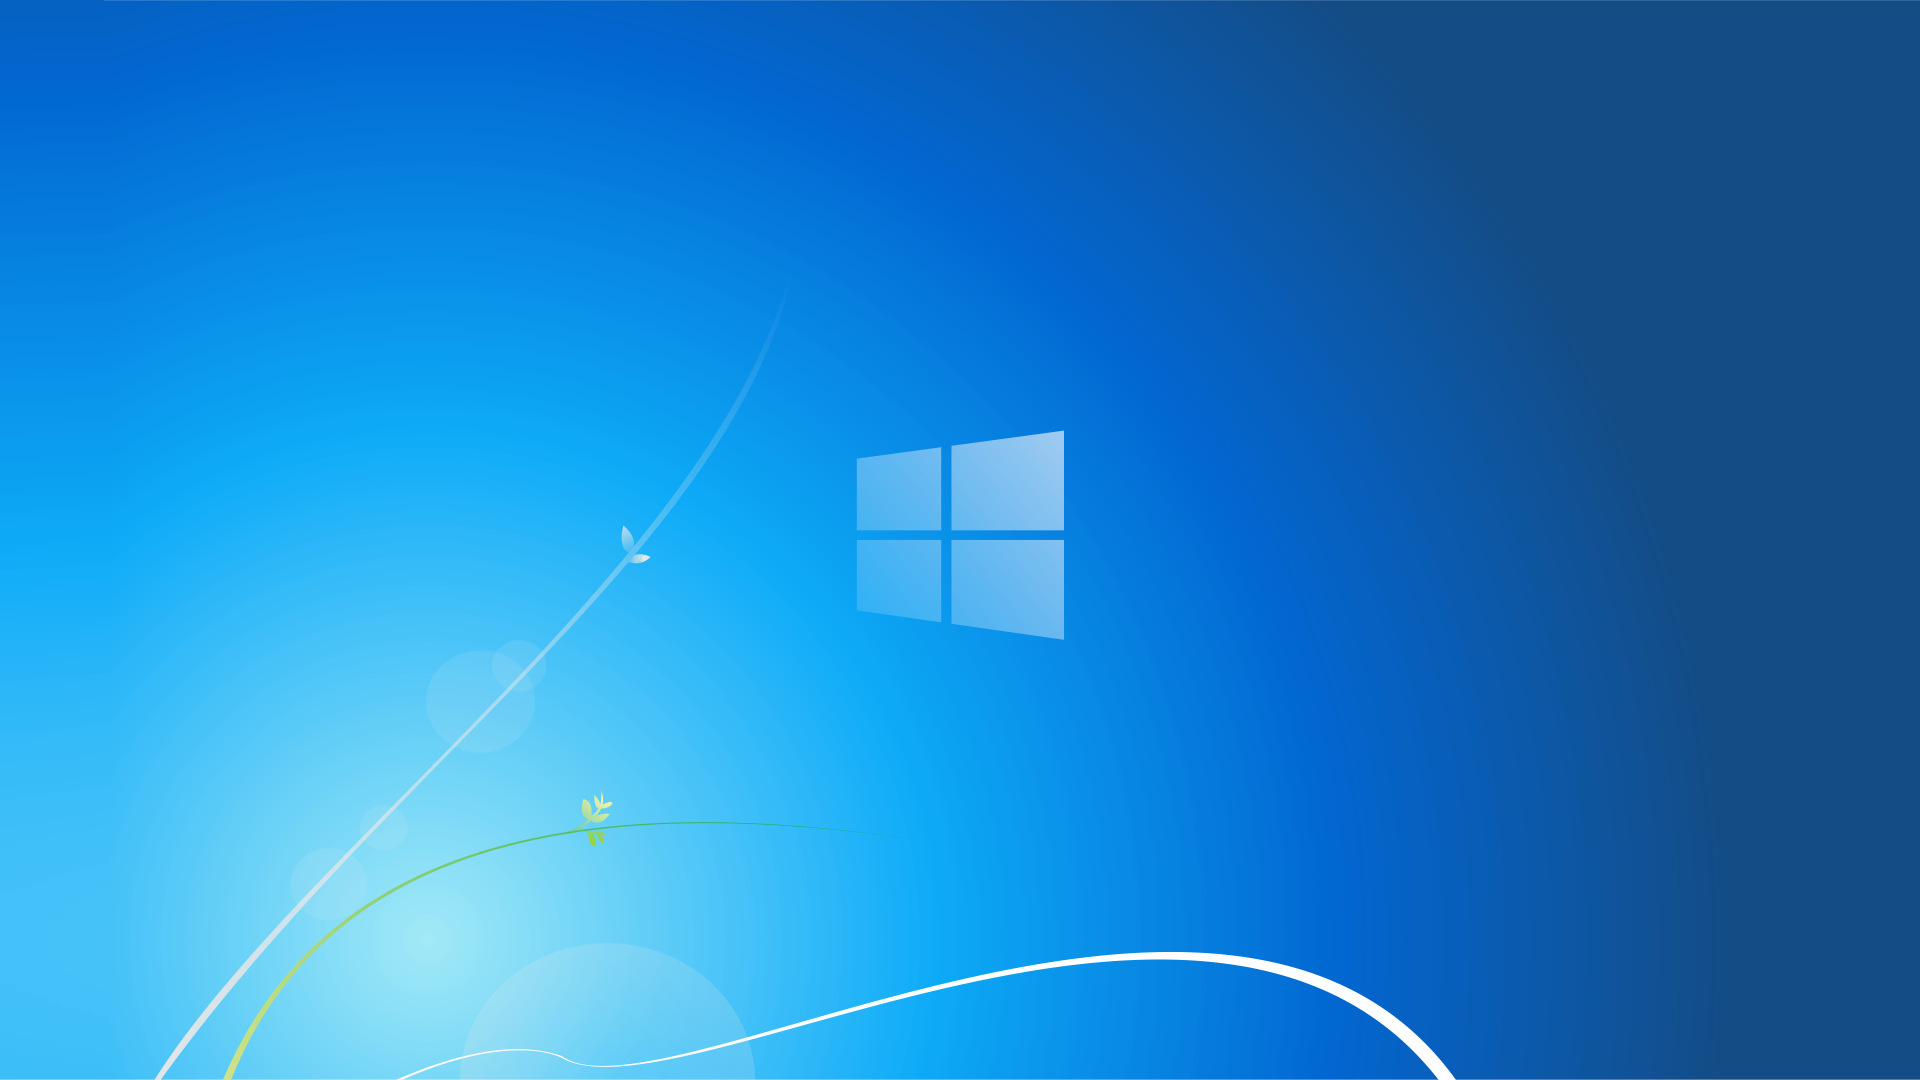 Bạn muốn tải hình nền Windows 7 miễn phí, với độ phân giải 4k sắc nét để thay đổi không gian của màn hình máy tính? Hãy truy cập trang web chuyên cung cấp những hình nền độc đáo, phong phú để bạn dễ dàng tìm được hình nền ưng ý và mang đến trải nghiệm tuyệt vời cho người dùng.